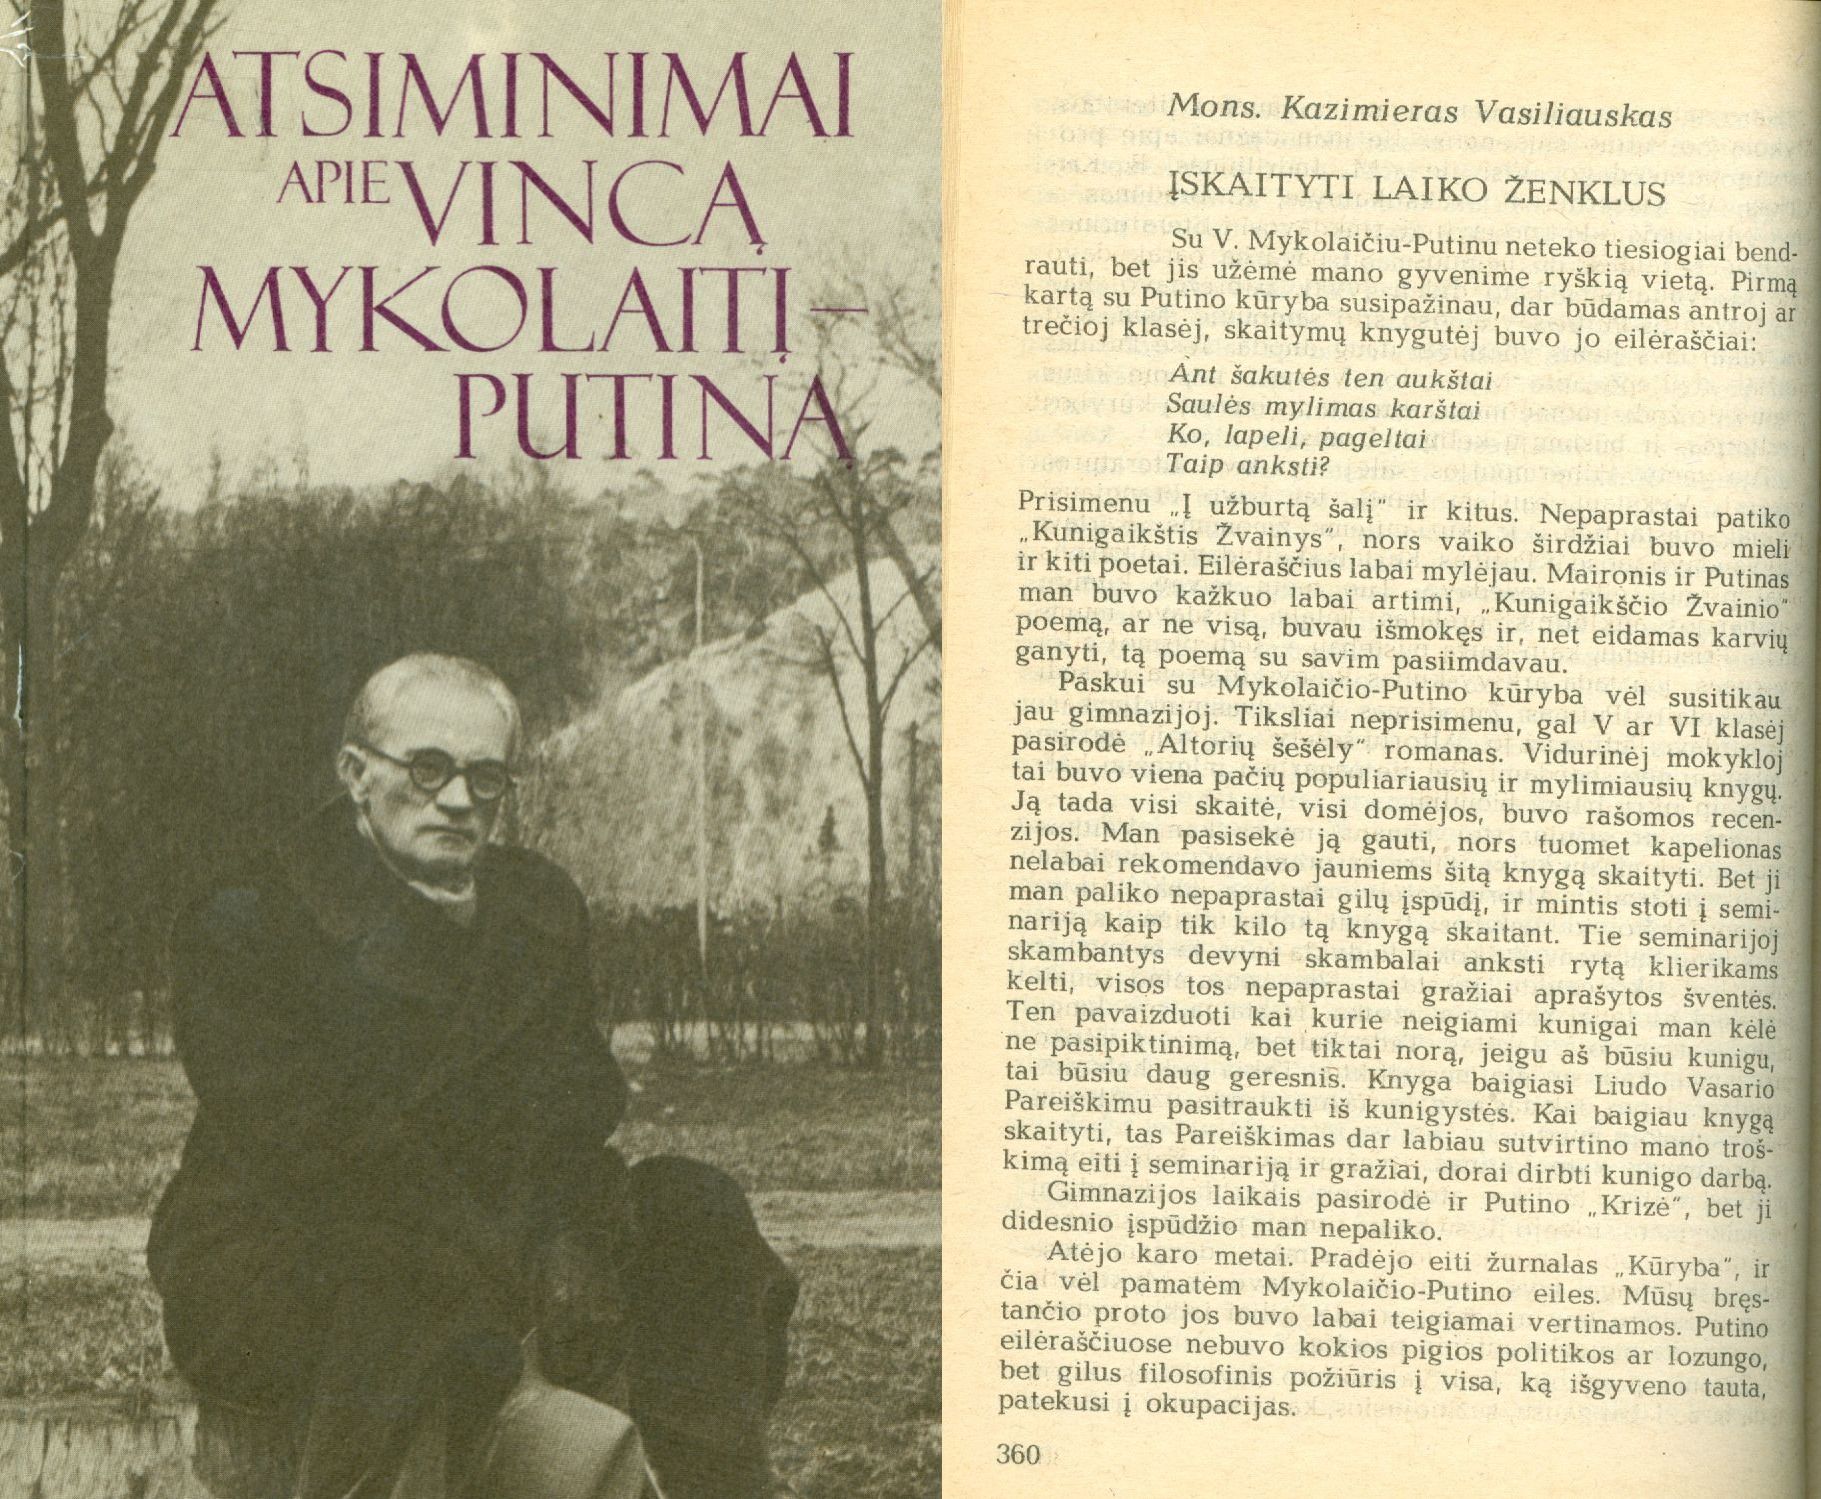 Atsiminimai apie Vincą Mykolaitį-Putiną knygos viršelis